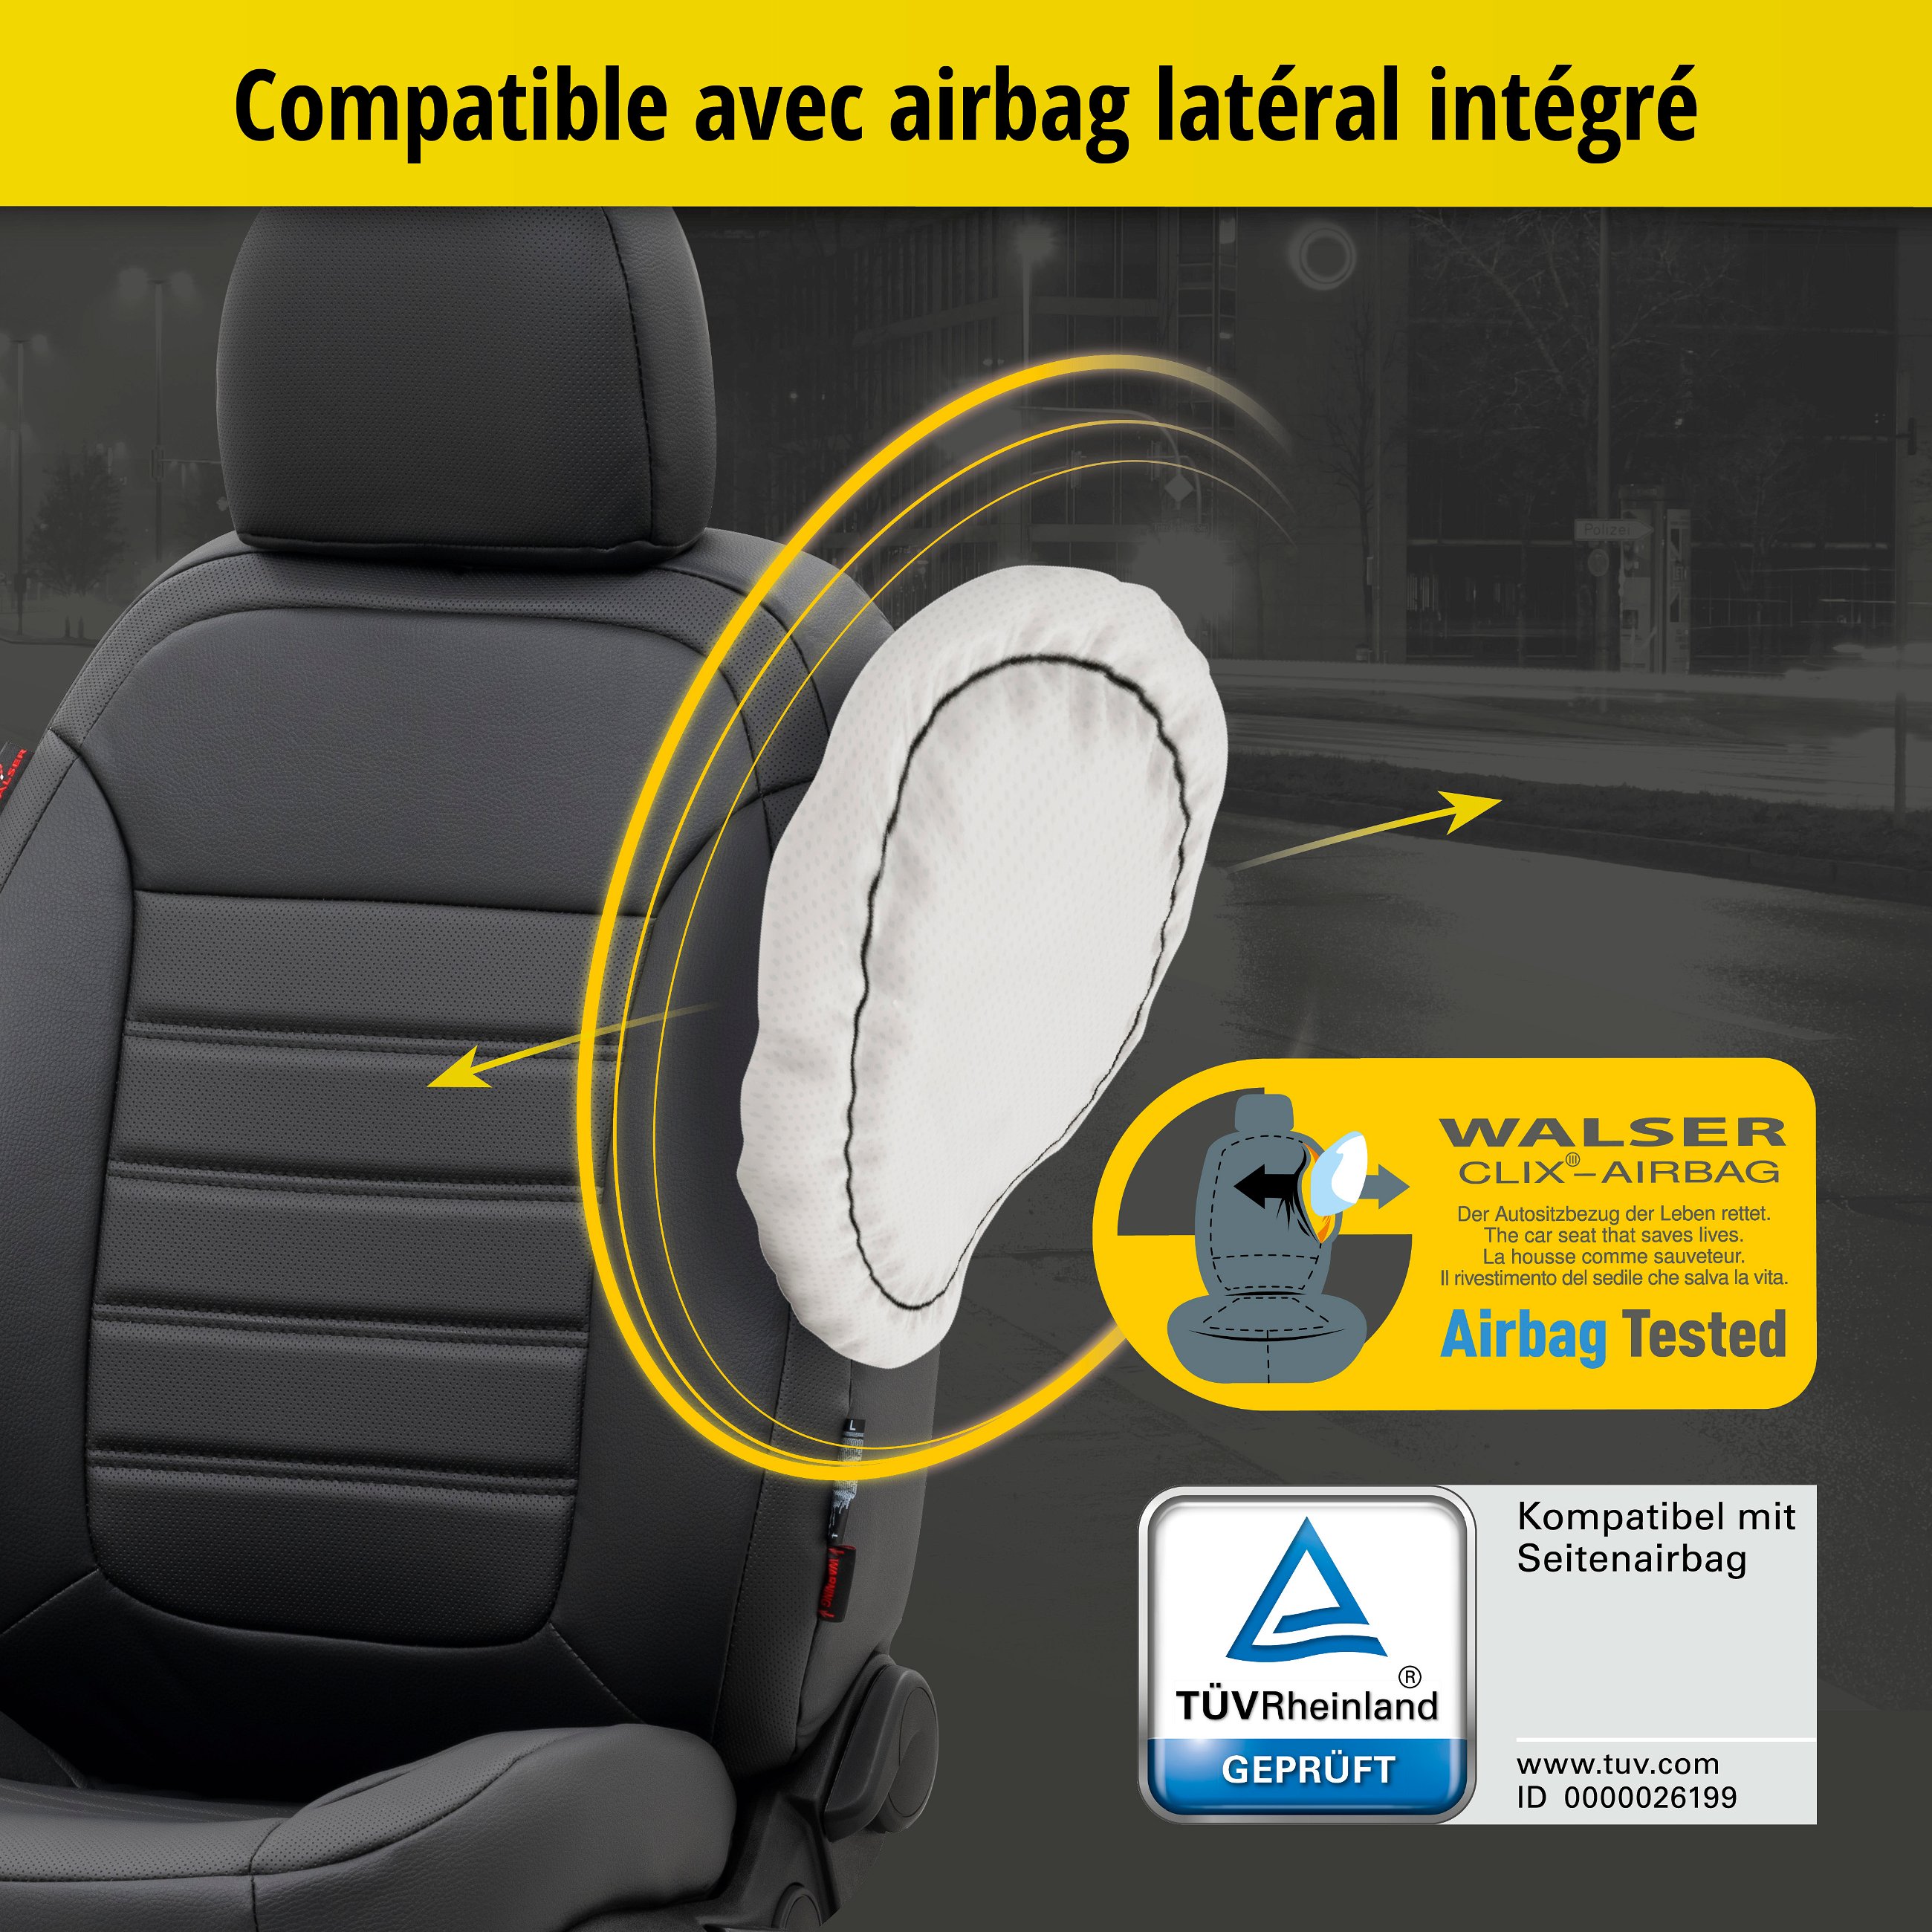 Housse de siège Robusto pour Audi A4 Avant (8K5, B8) 11/2007-12/2015, 2 housses de siège pour sièges sport